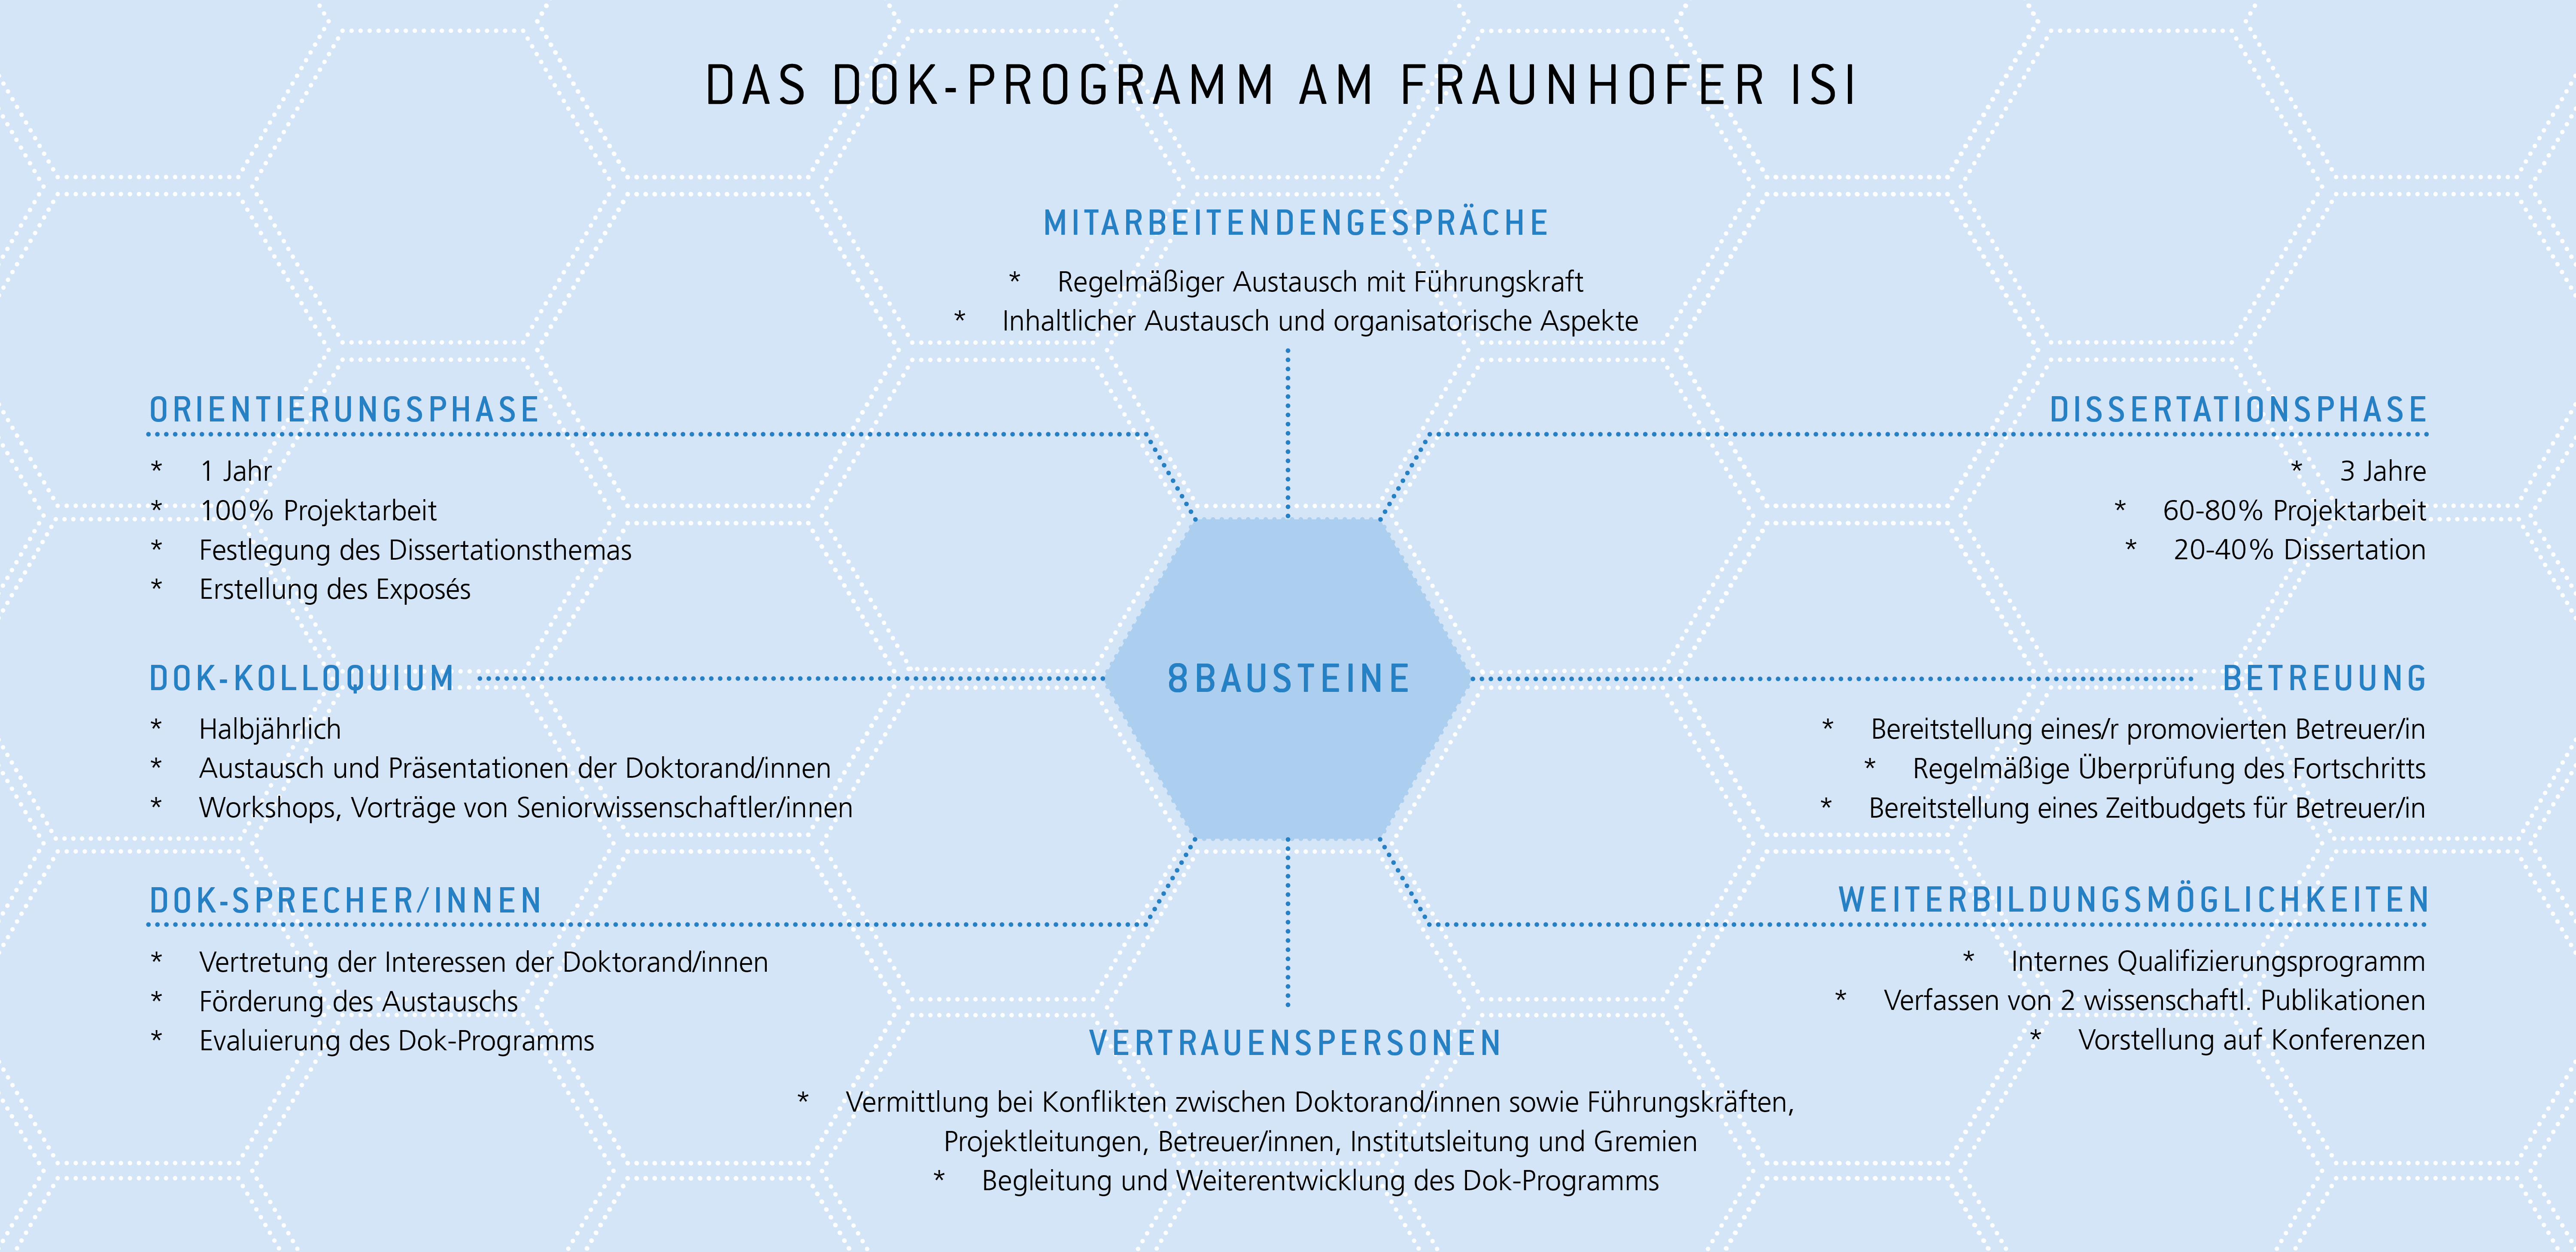 Programm zur Erstellung von Dissertationen am Fraunhofer ISI